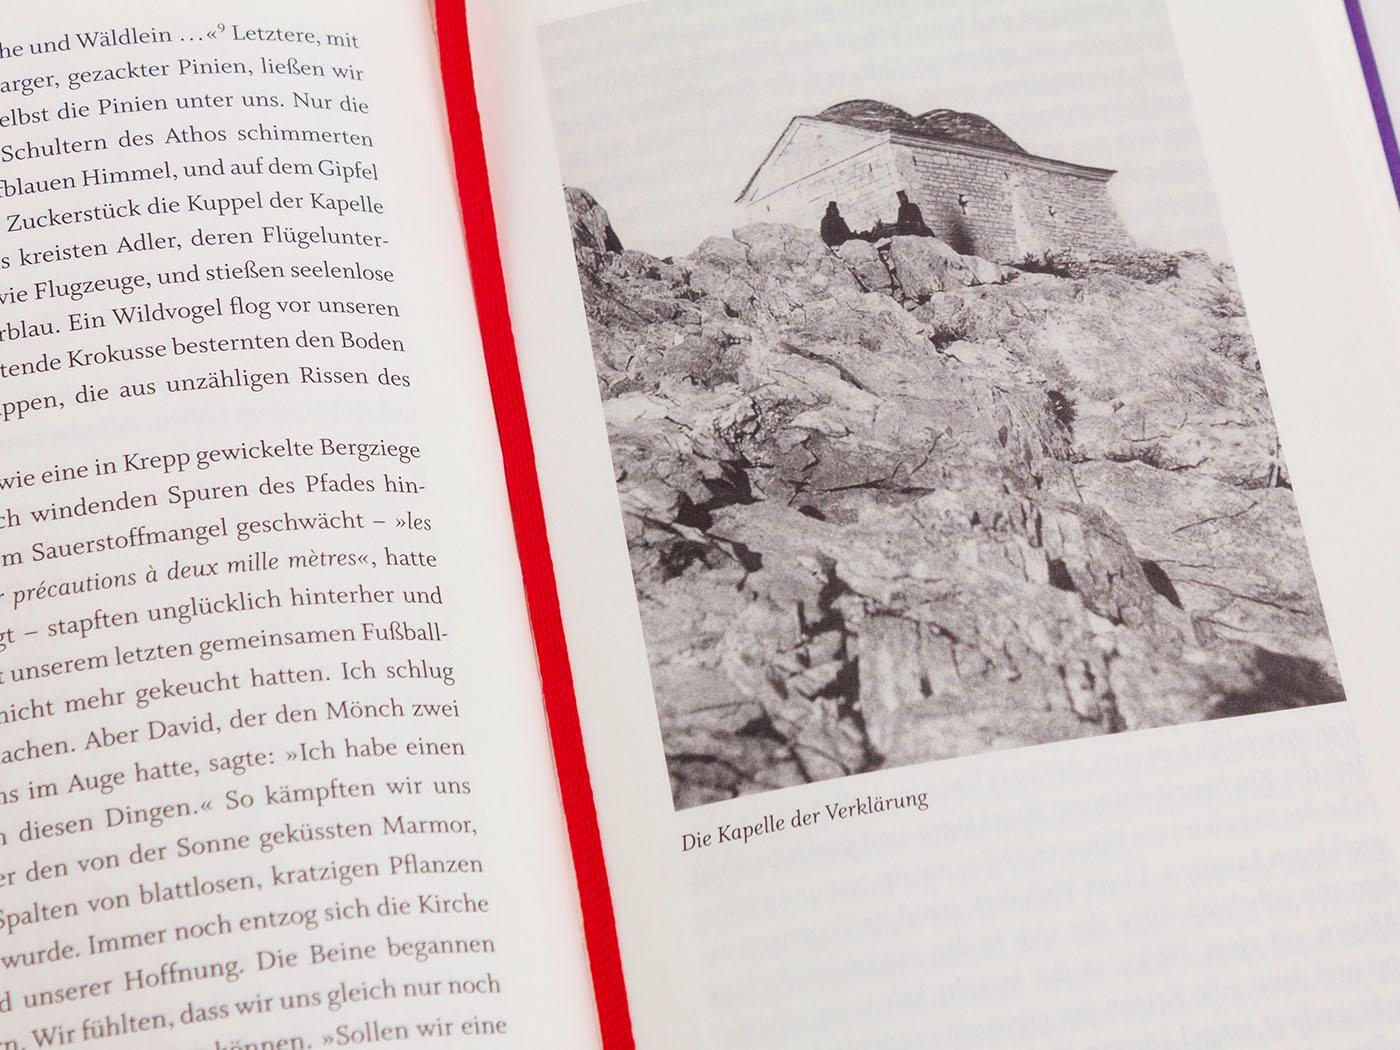 Bild: 9783847704225 | Der Berg Athos - Reise nach Griechenland | Robert Byron | Buch | 2020